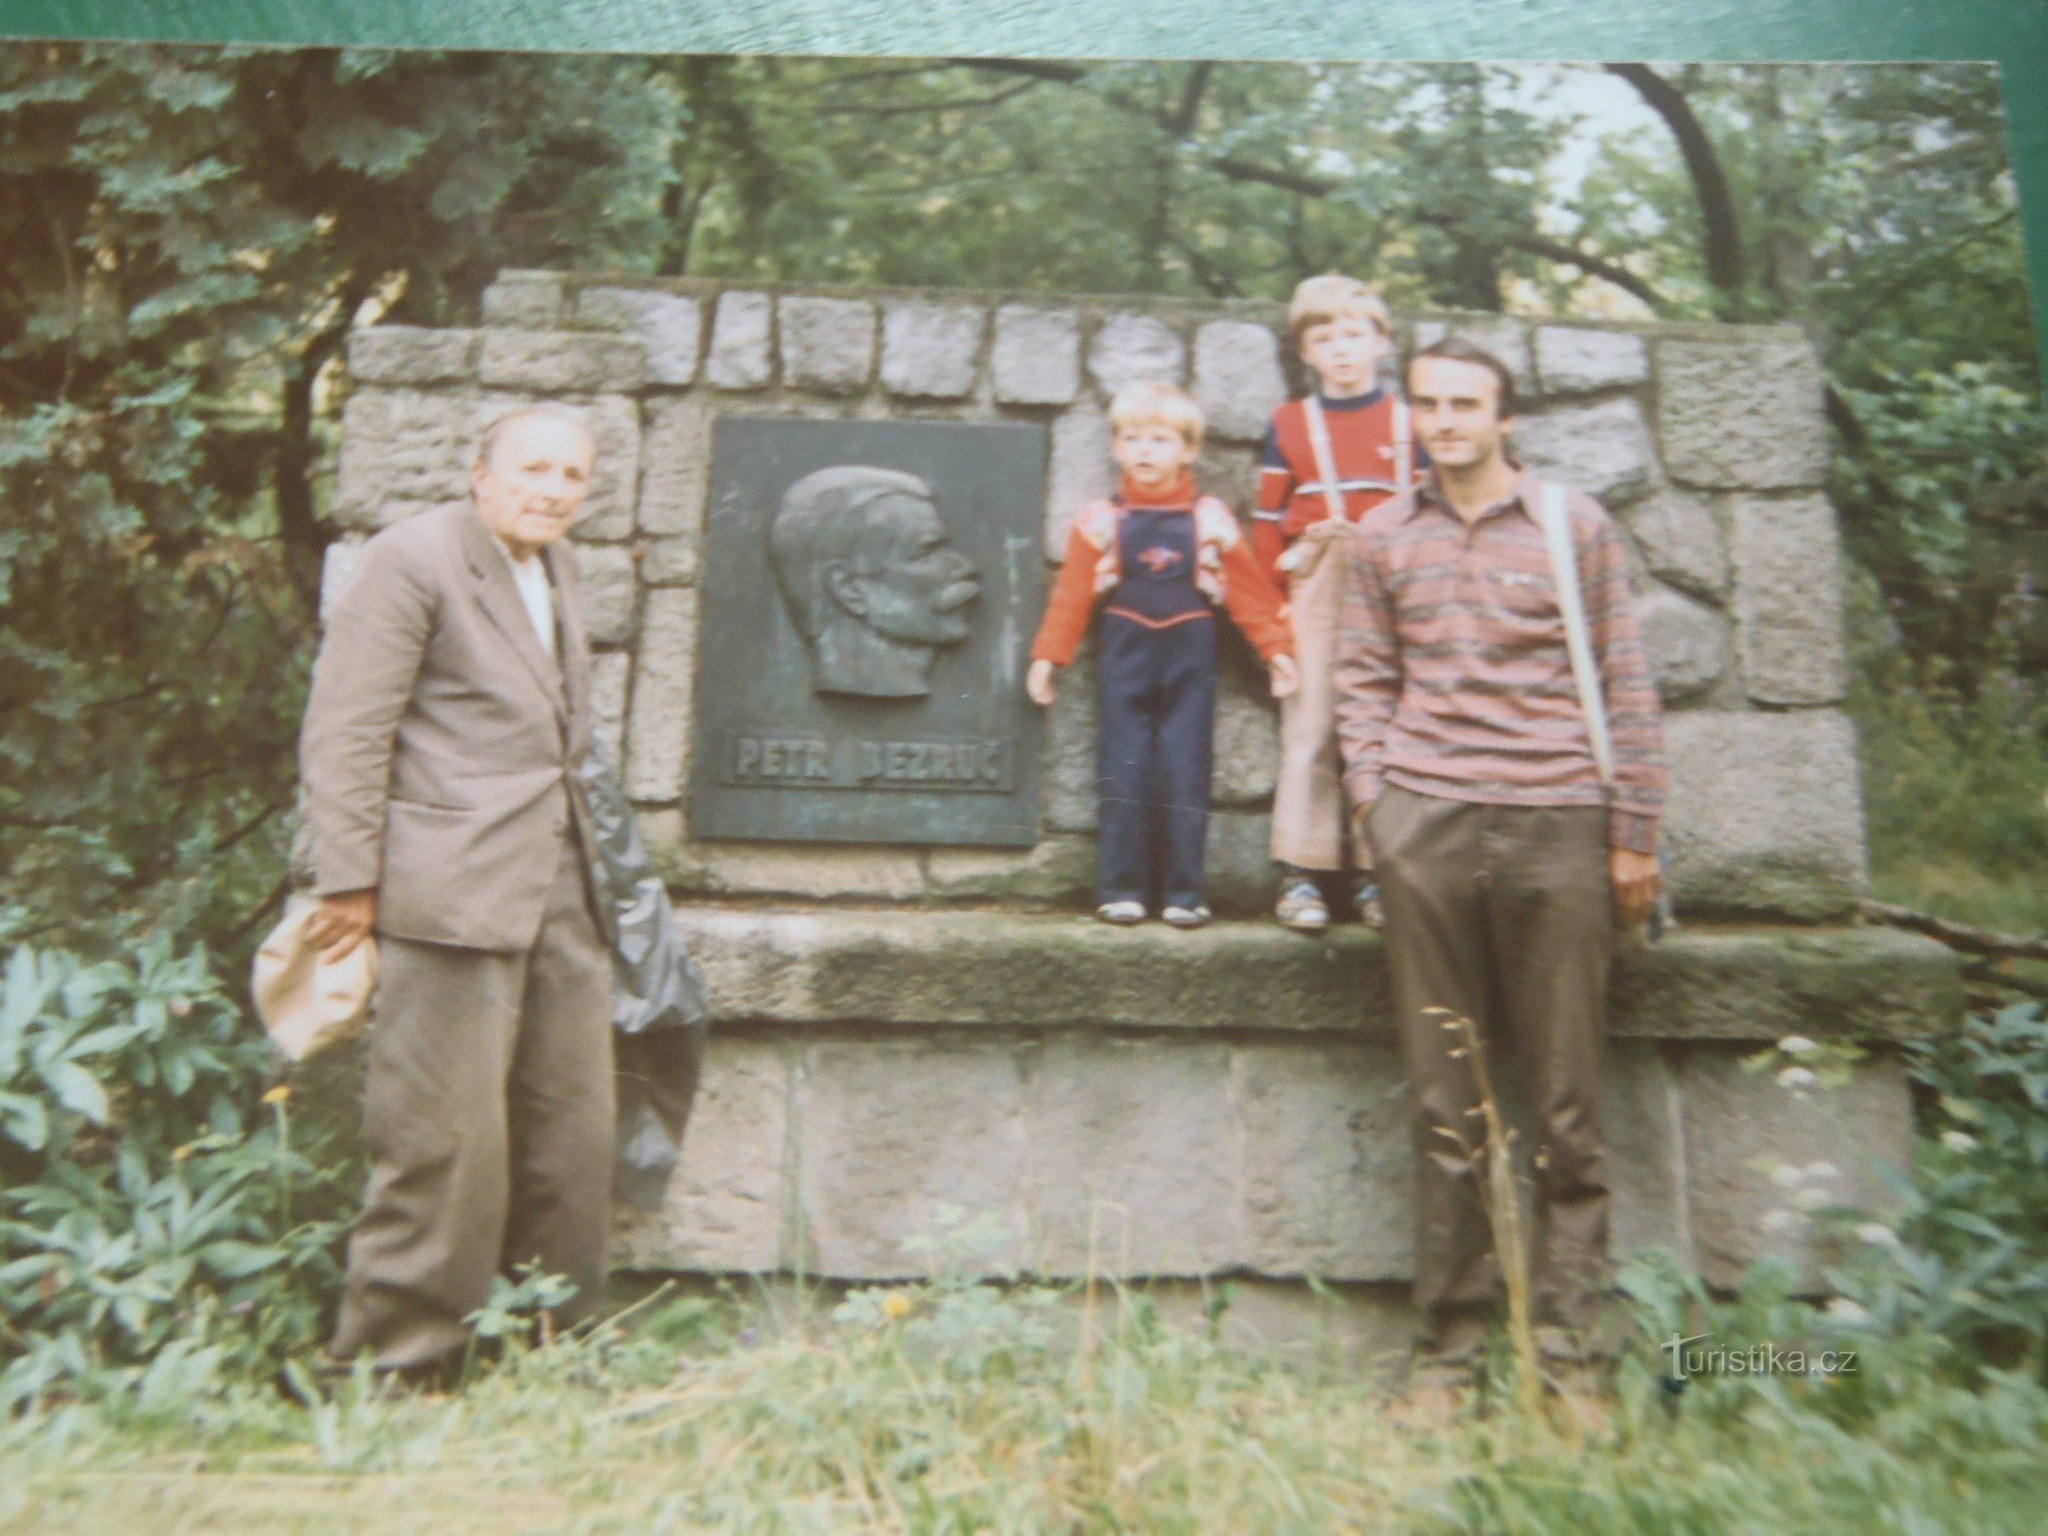 To samo miejsce, rok 1987. Mój tata Otakar Vašek, bratanek Petr Bezruč i wnuk Anto